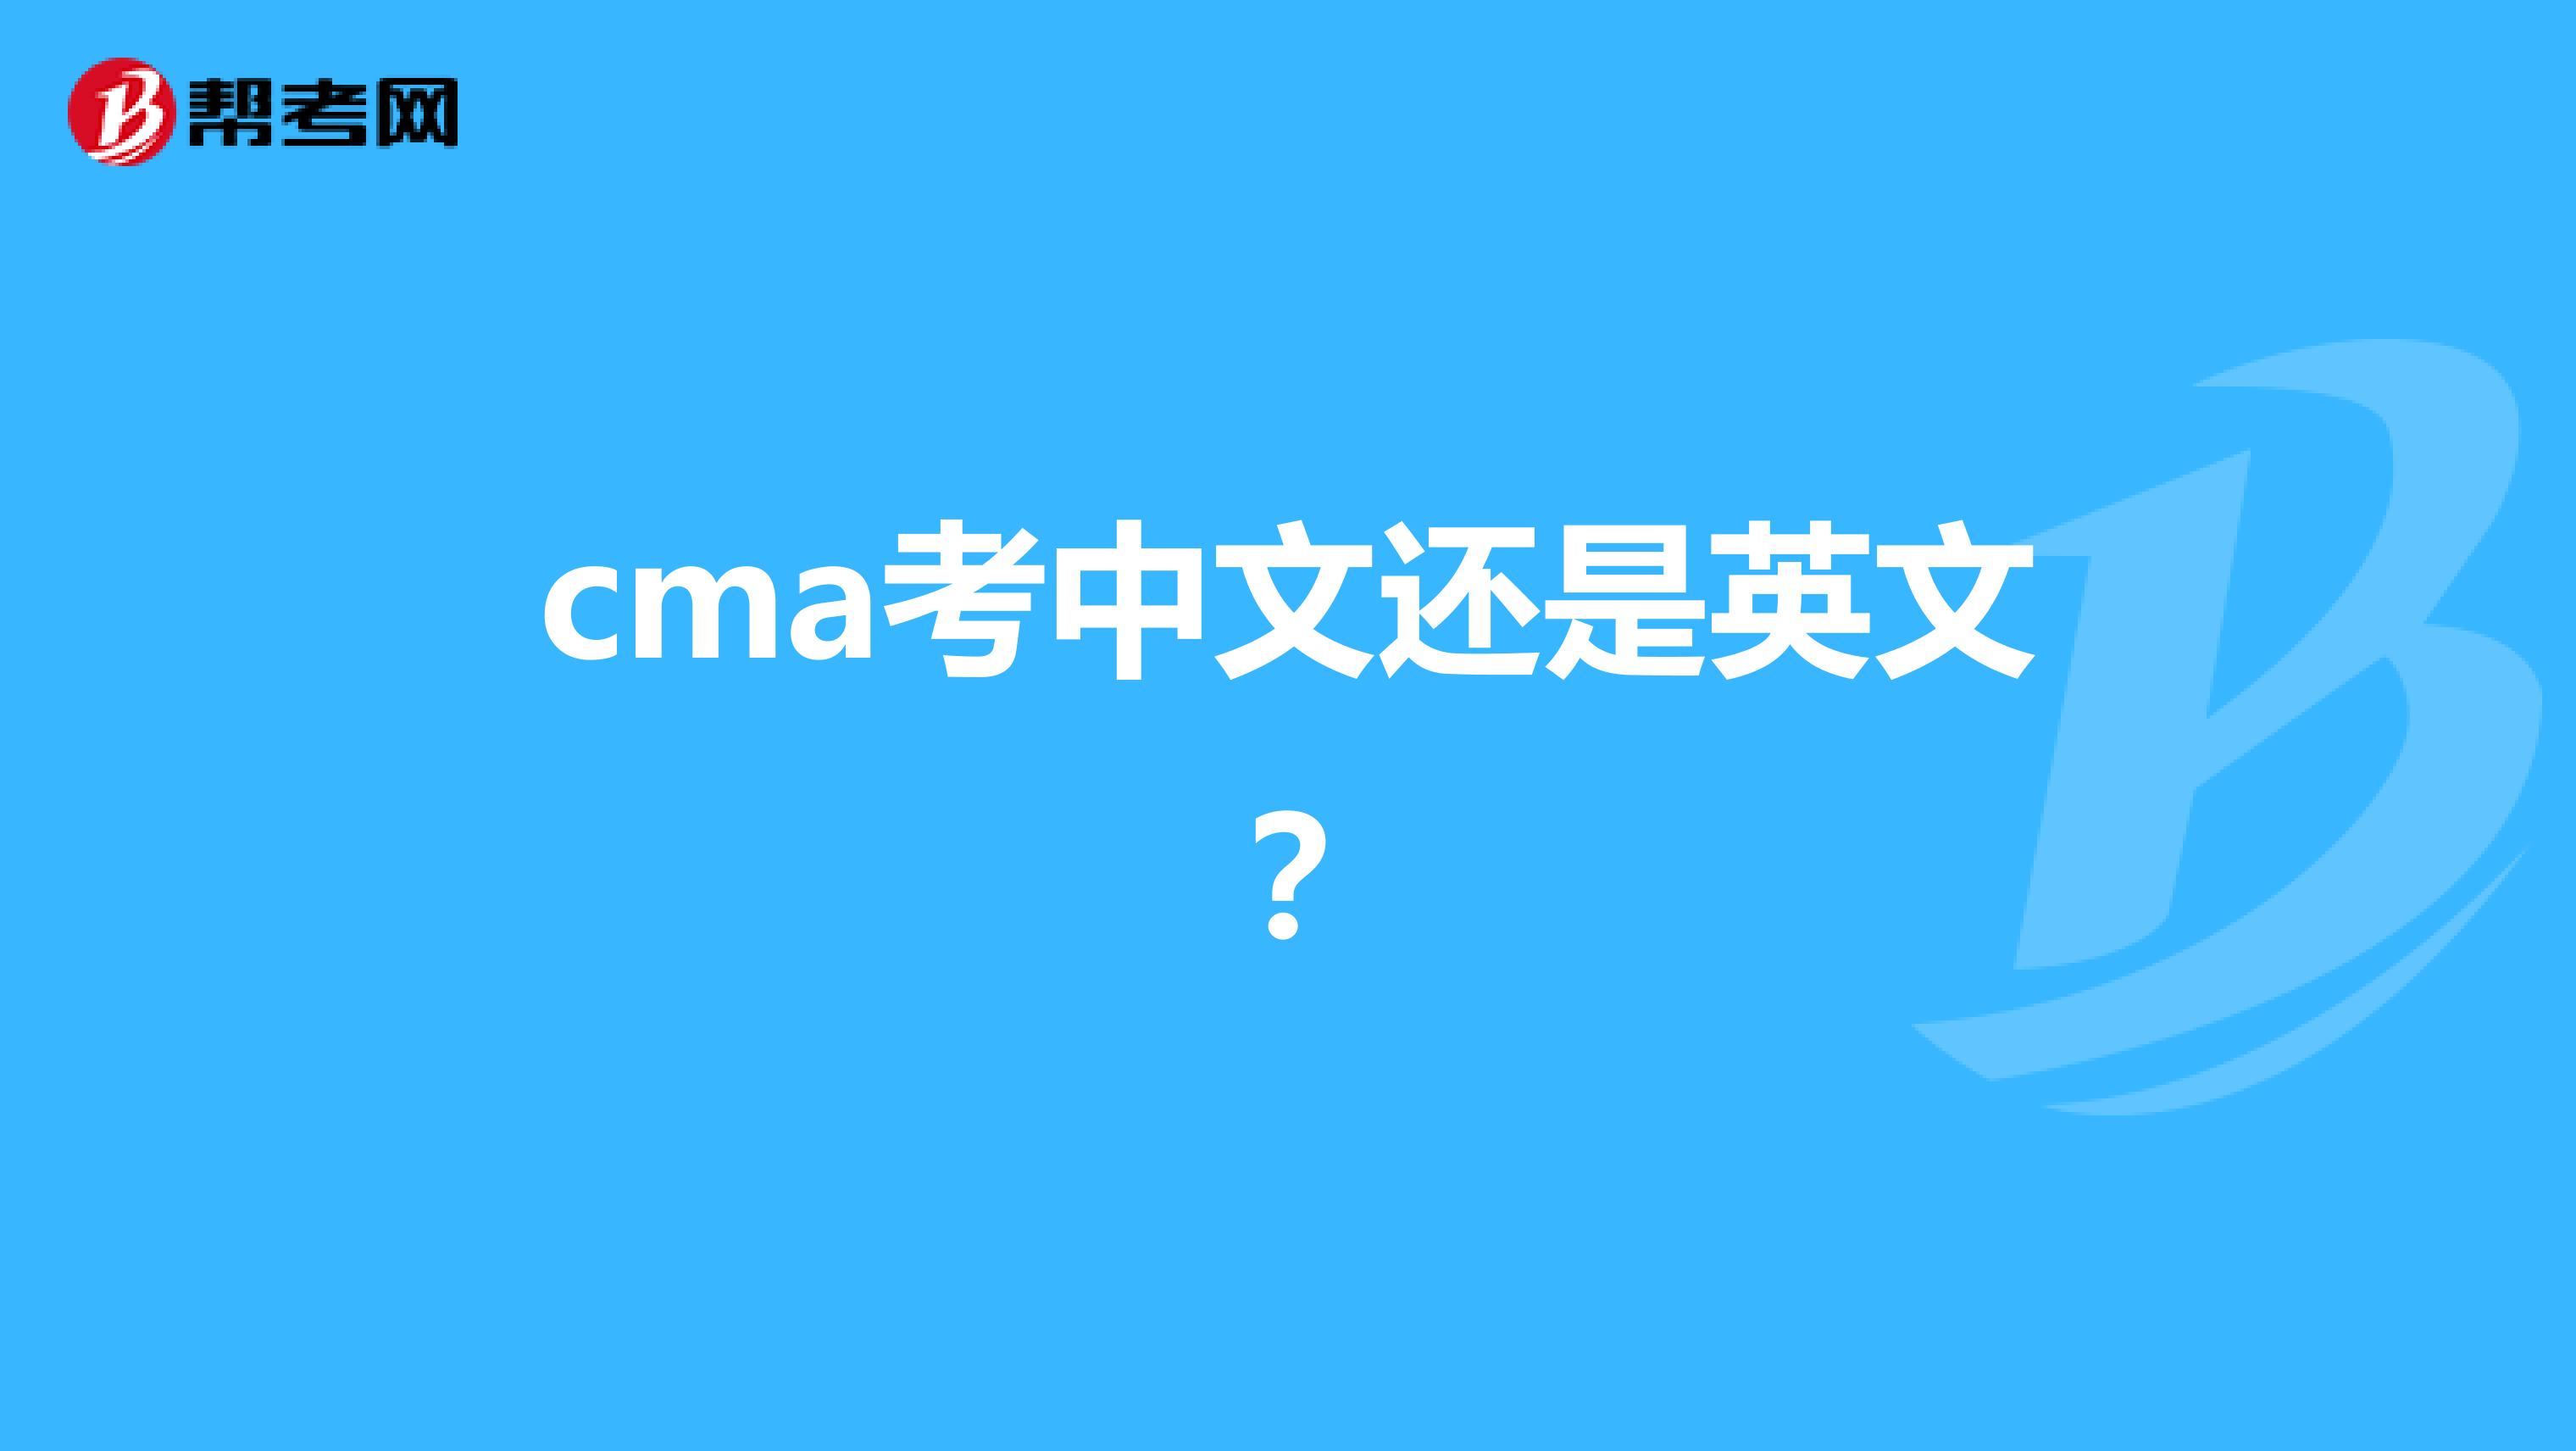 cma考中文还是英文？